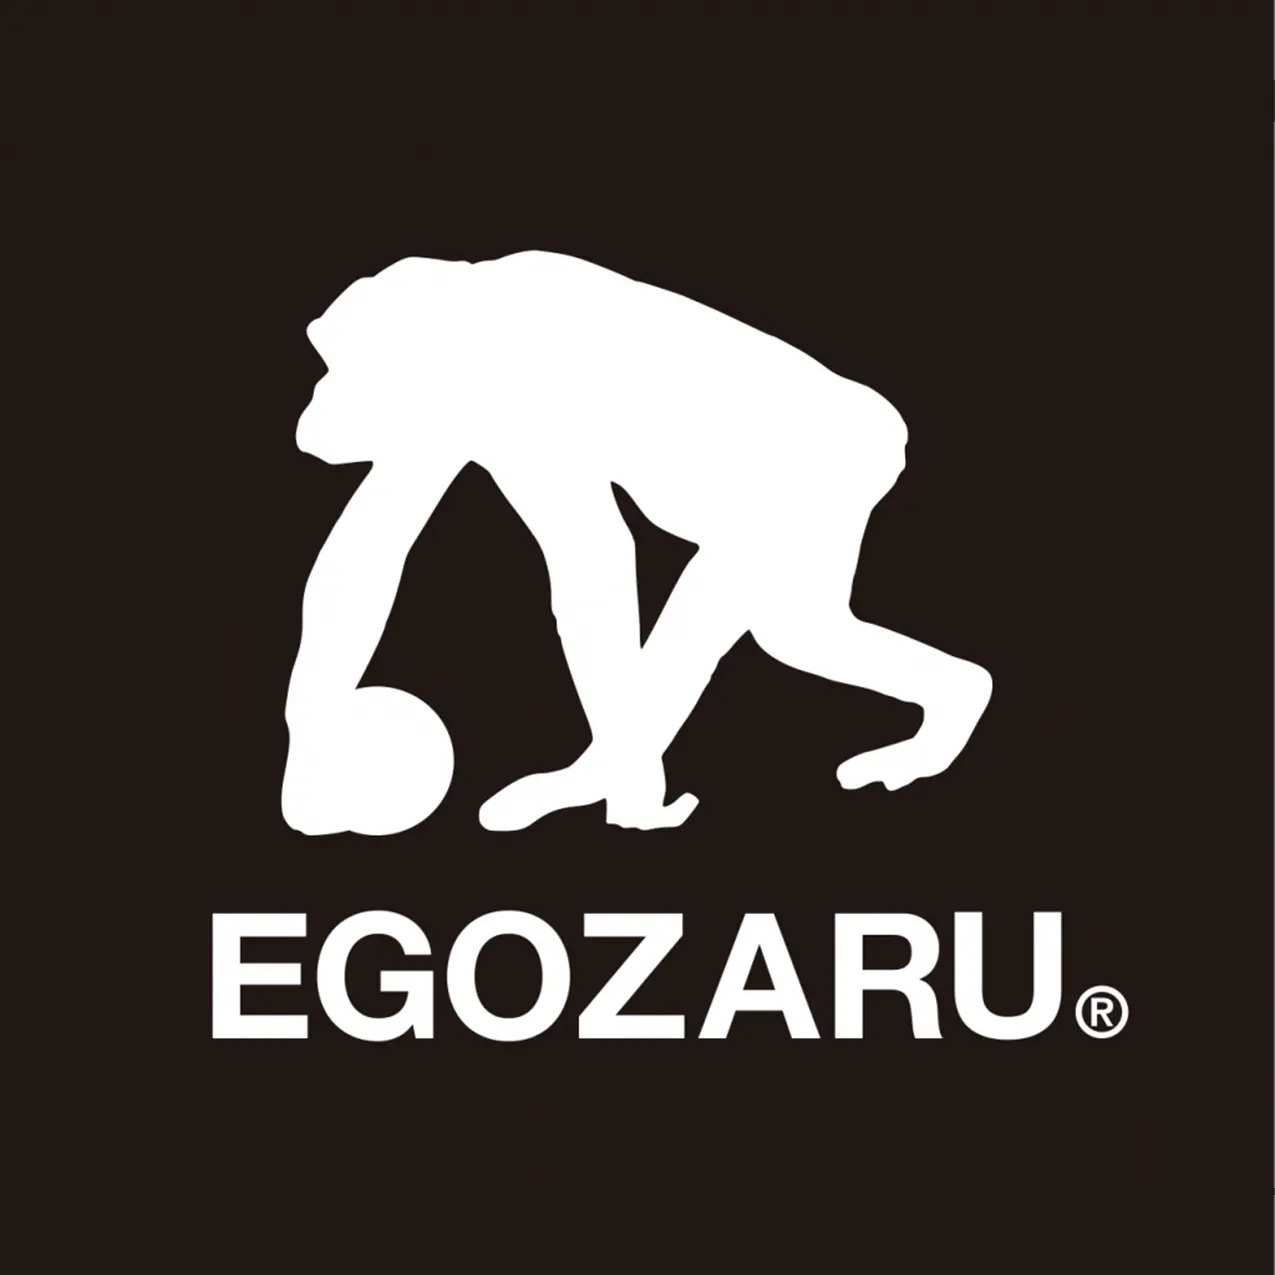 圧倒的高品質を実現したウエアを展開する、日本発の“プレミアム”バスケットボールブランド「EGOZARU(エゴザル)」。